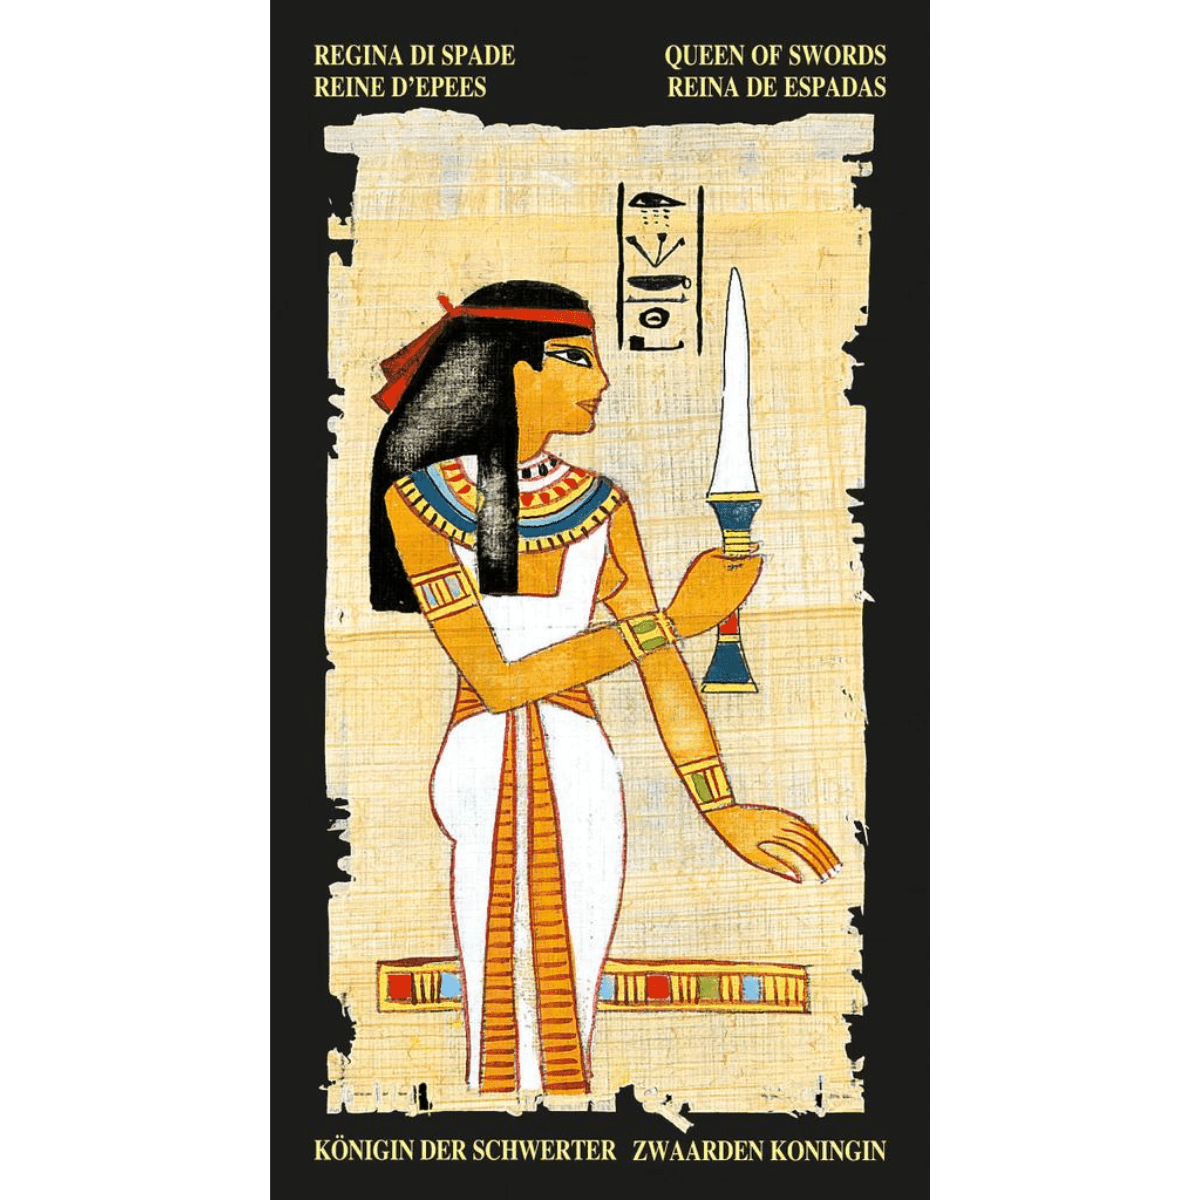 Egyptian Tarot Deck--Magic Hour